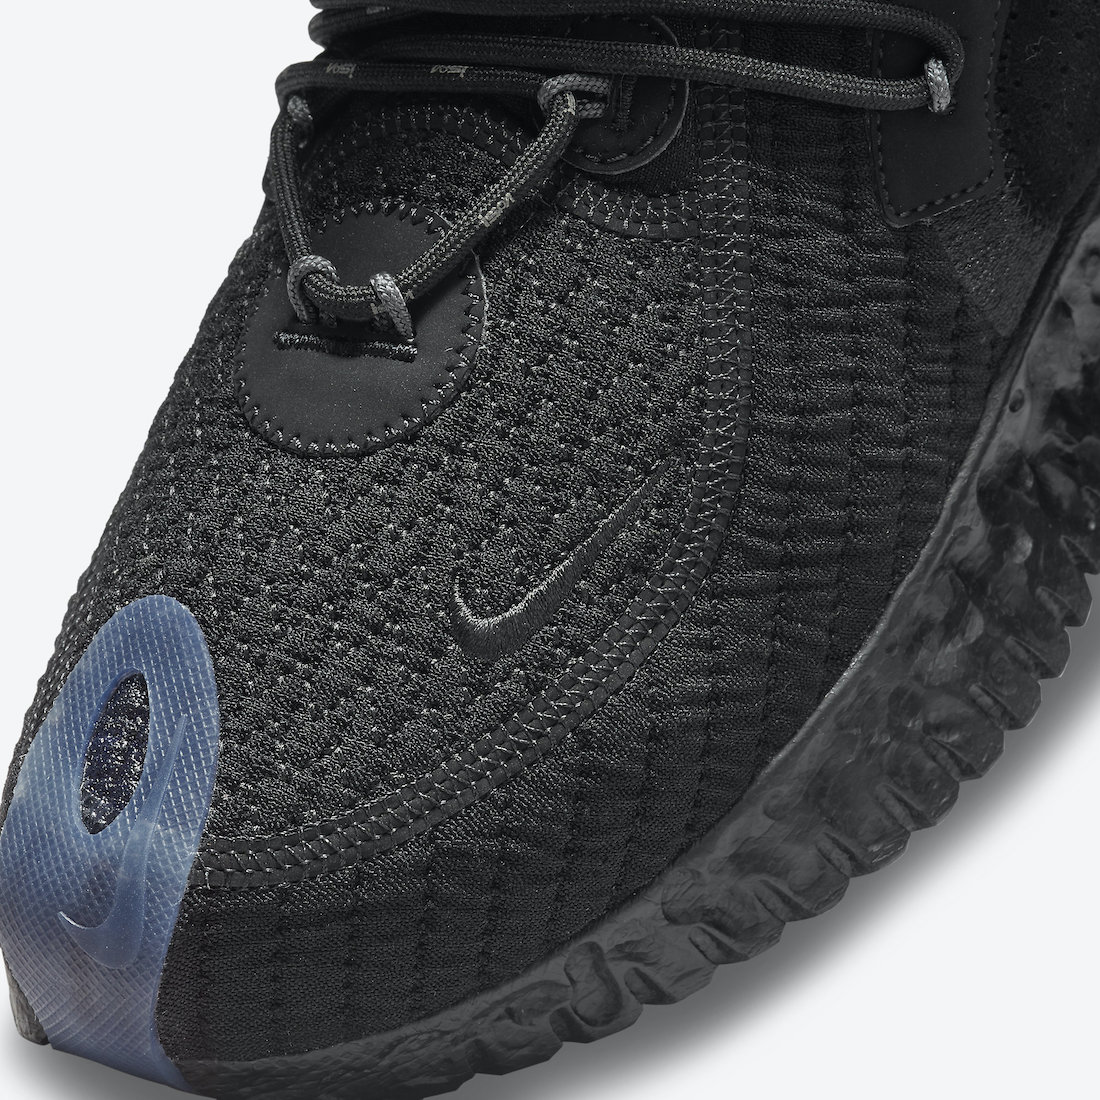 Nike ISPA Flow 2020 SE Black CW3045-002 Release Date Info